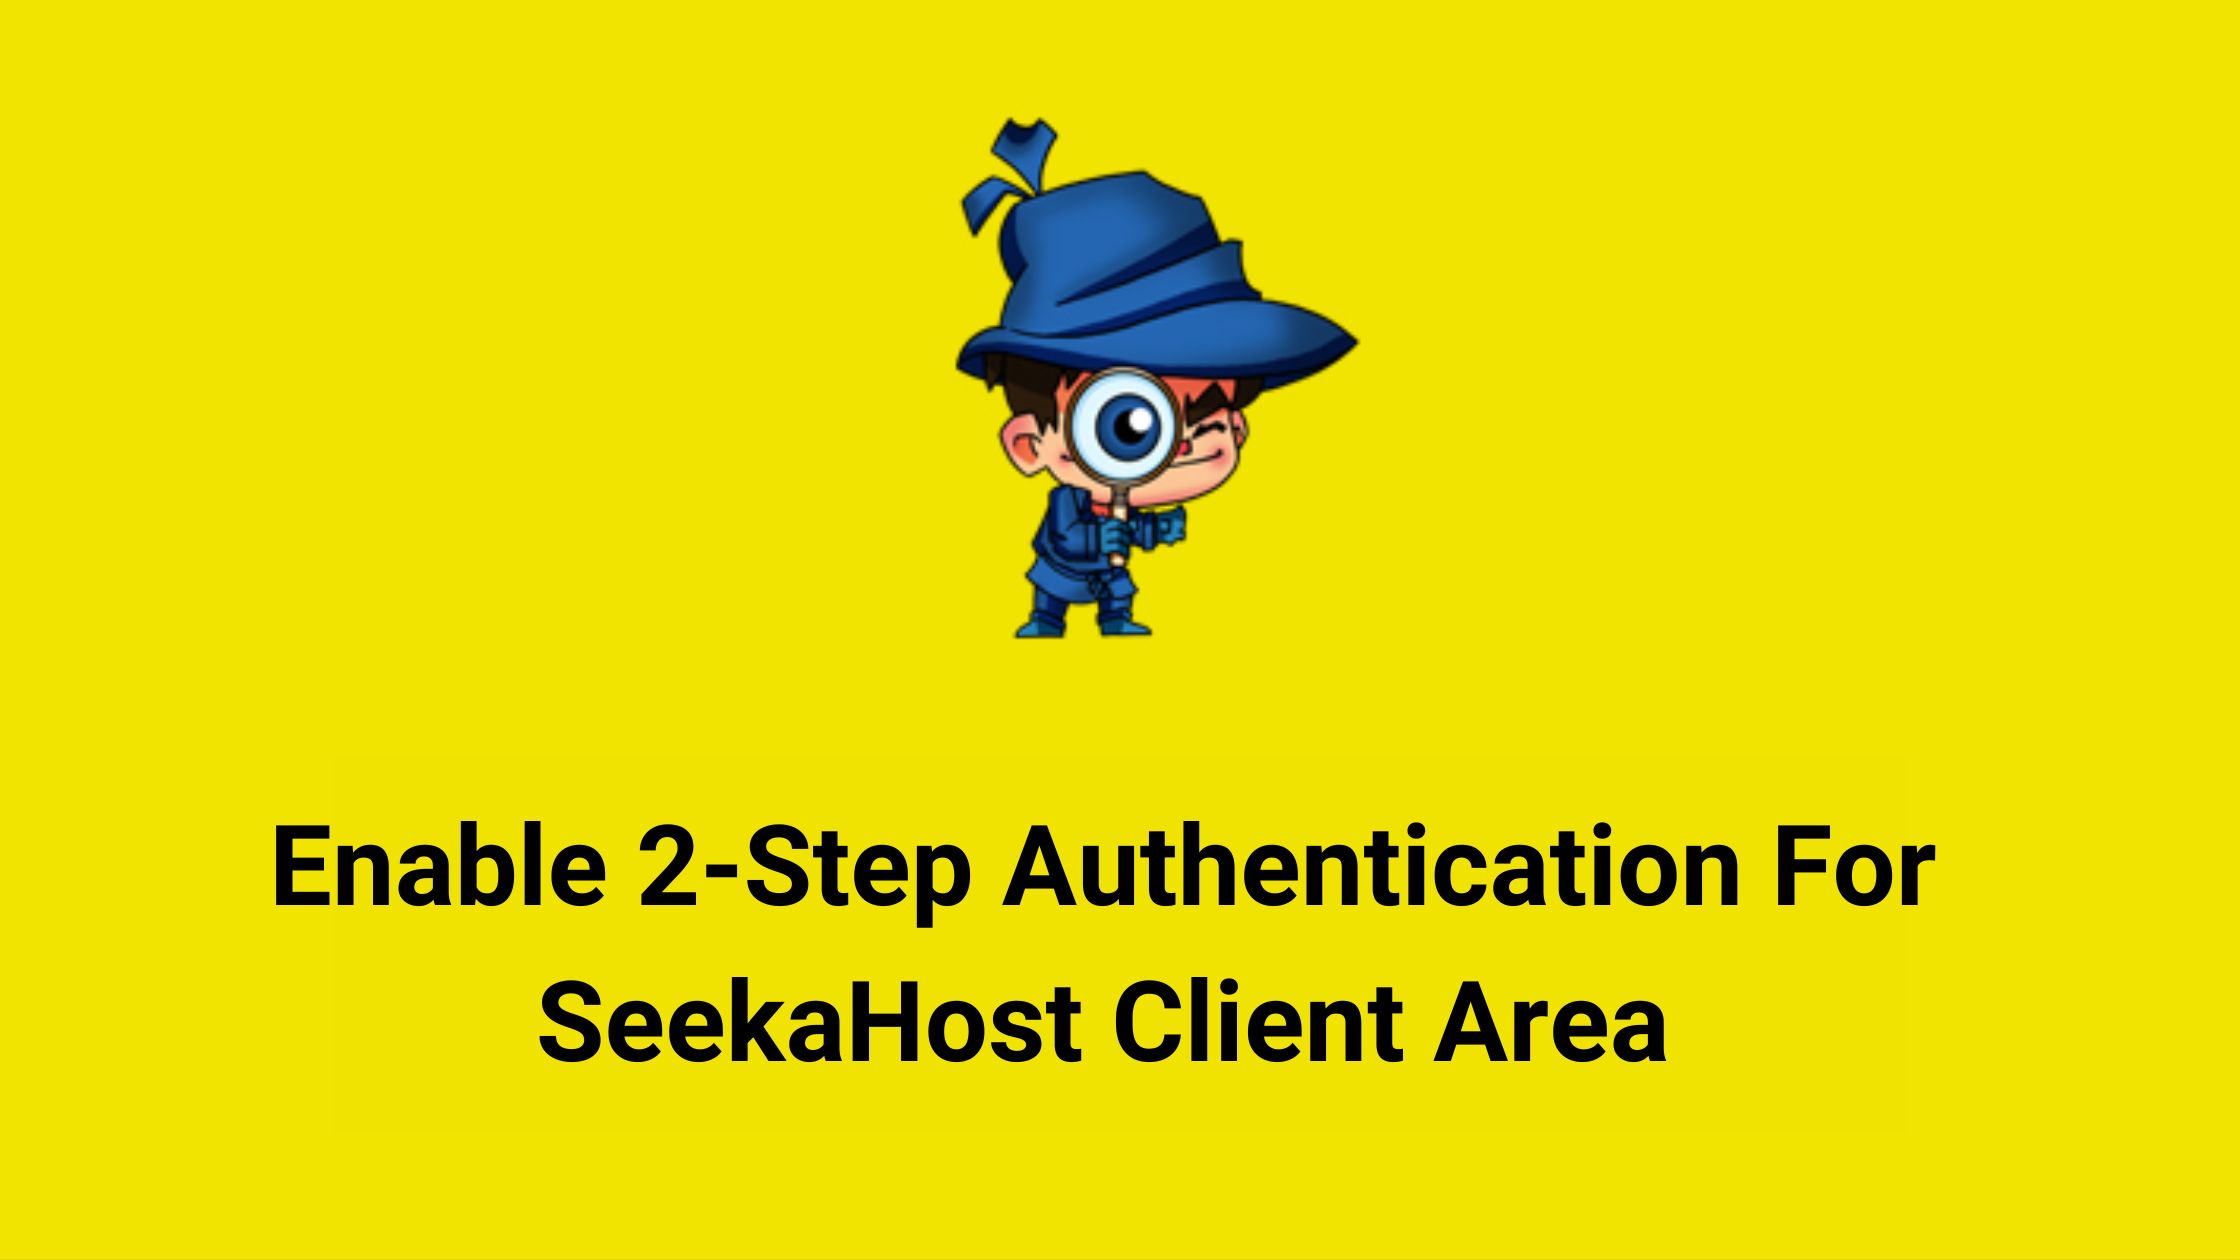 Enable 2 Factor Authentication For SeekaHost Client Area